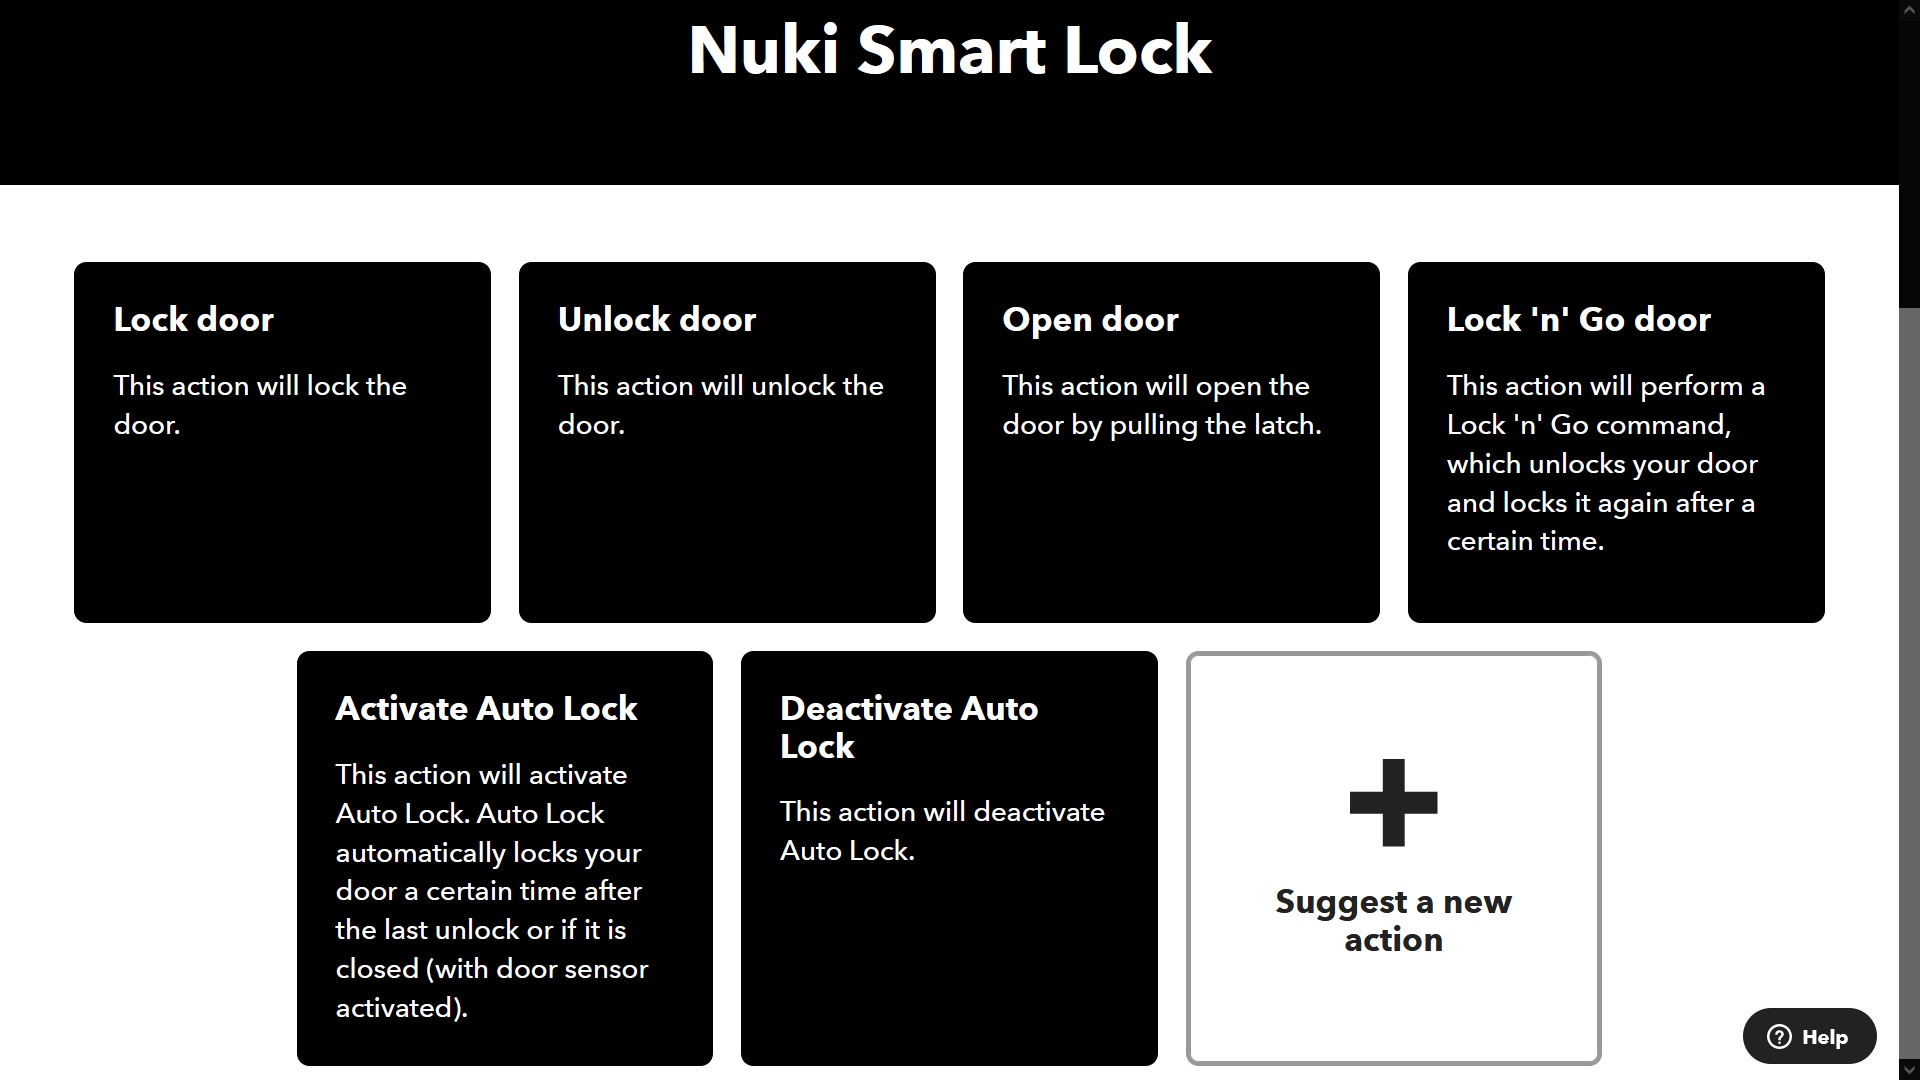 Análisis de la cerradura Nuki Smart Lock 3.0 Pro con Keypad 2.0 con huella  dactilar